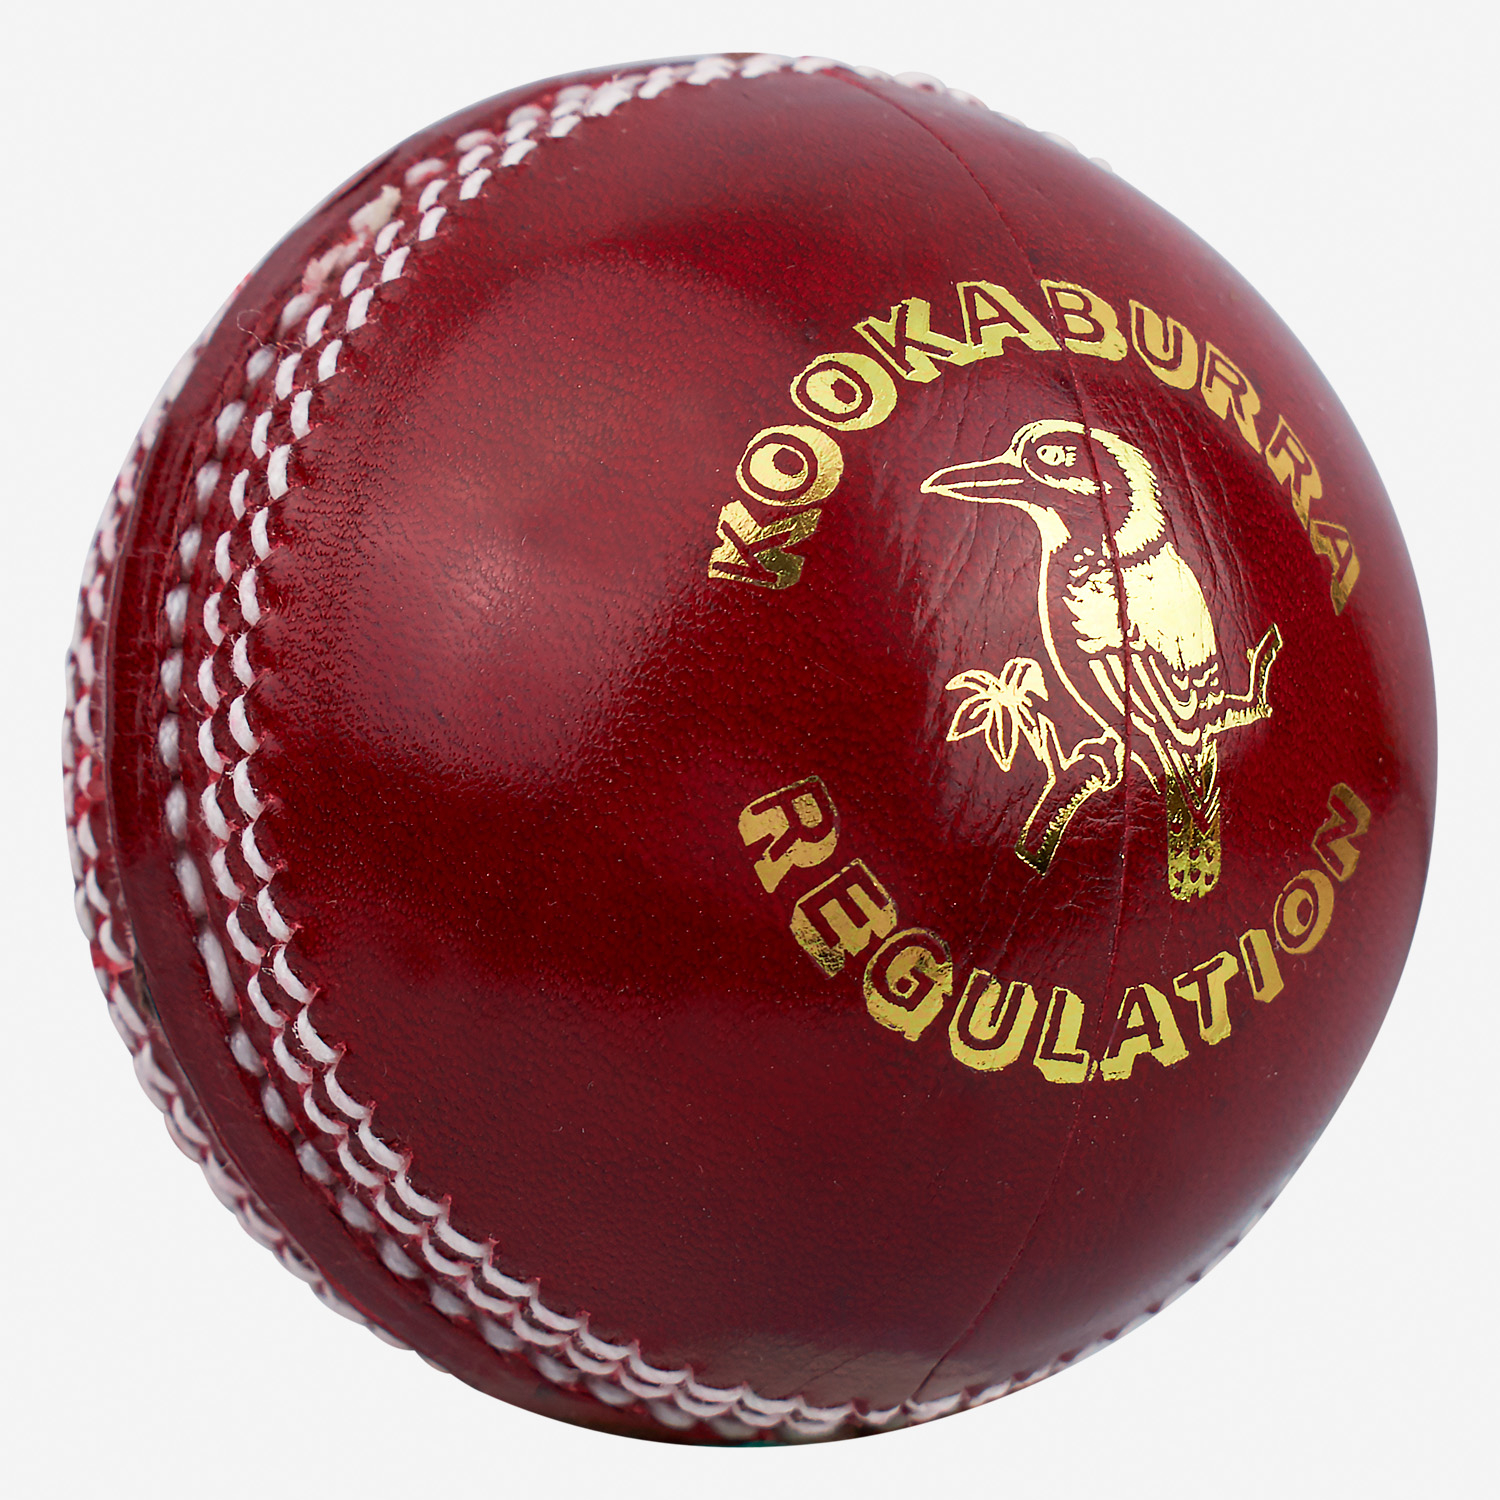 Kookaburra Regulation Cricket Ball